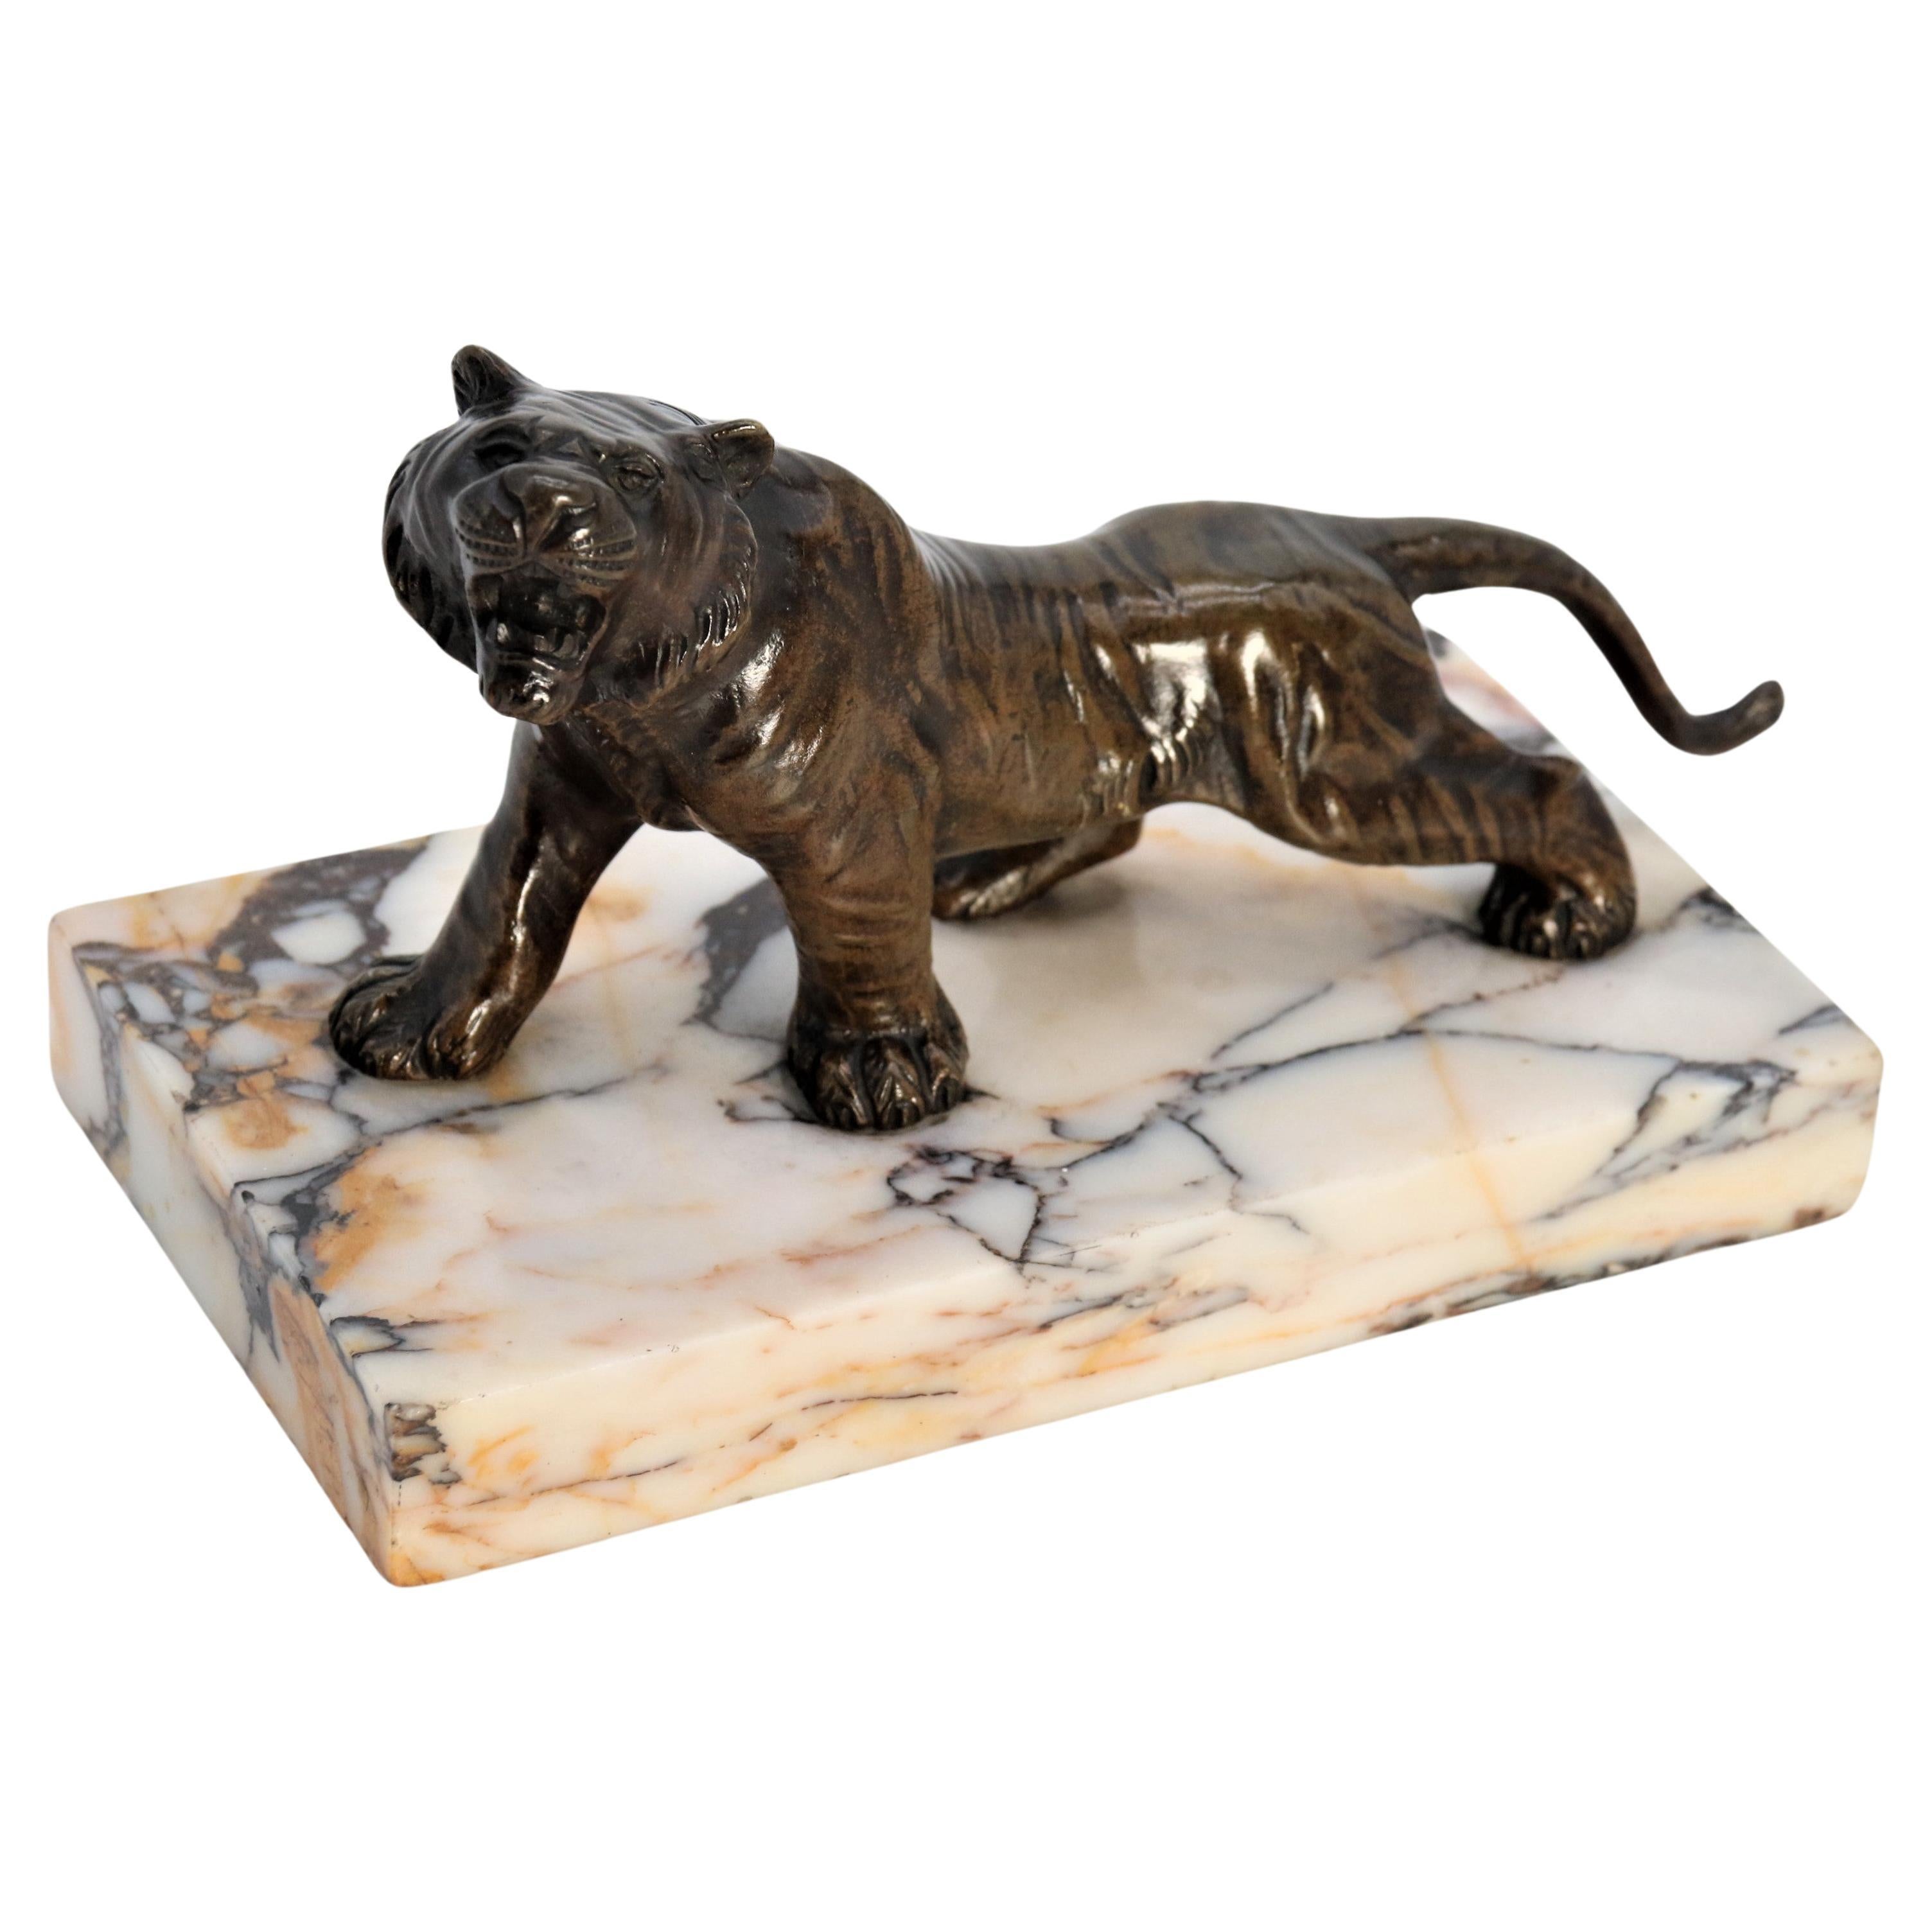 A  Etude de tigre en bronze français du 19ème siècle sur une base en marbre circa 1890